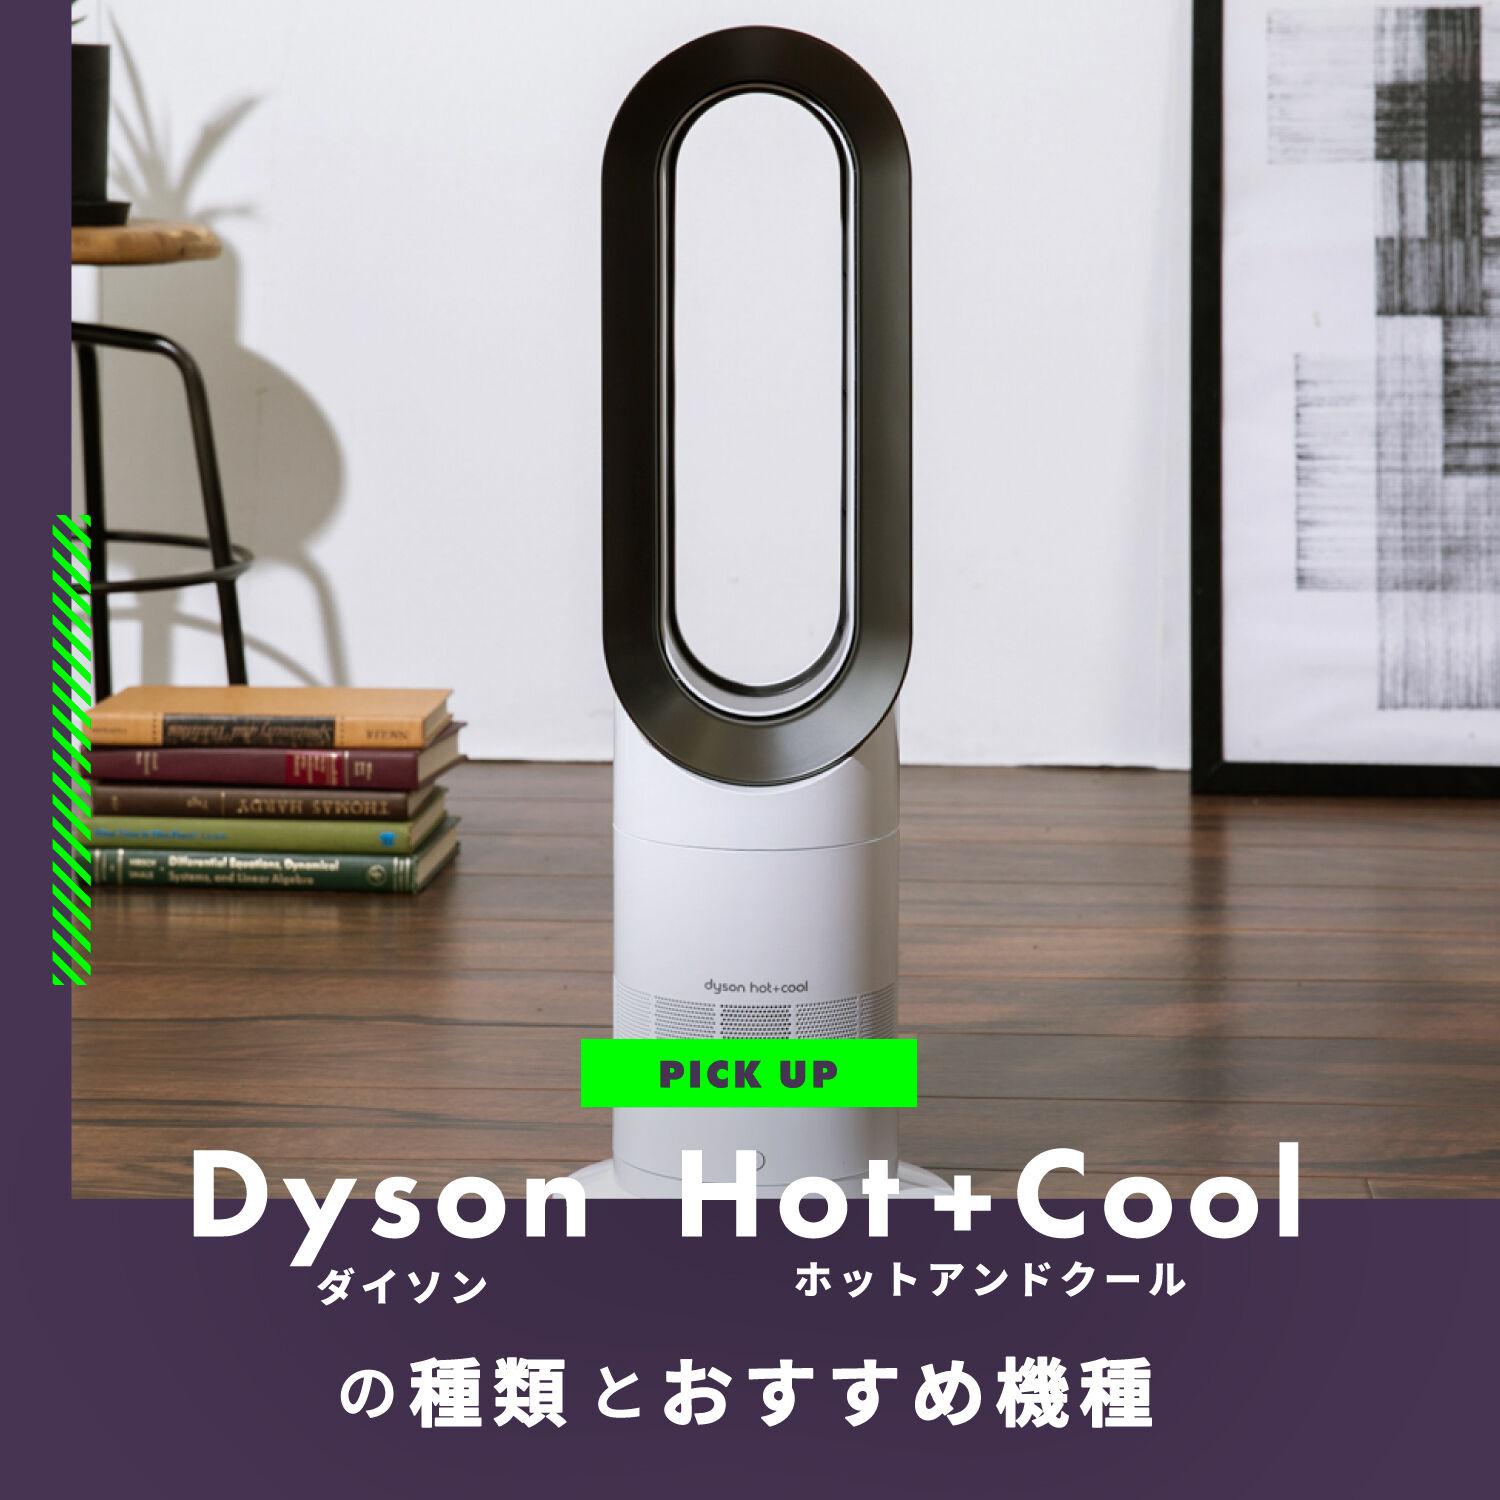 ダイソン ホットアンドクール 【Dyson Hot+Cool 】3種類の違い